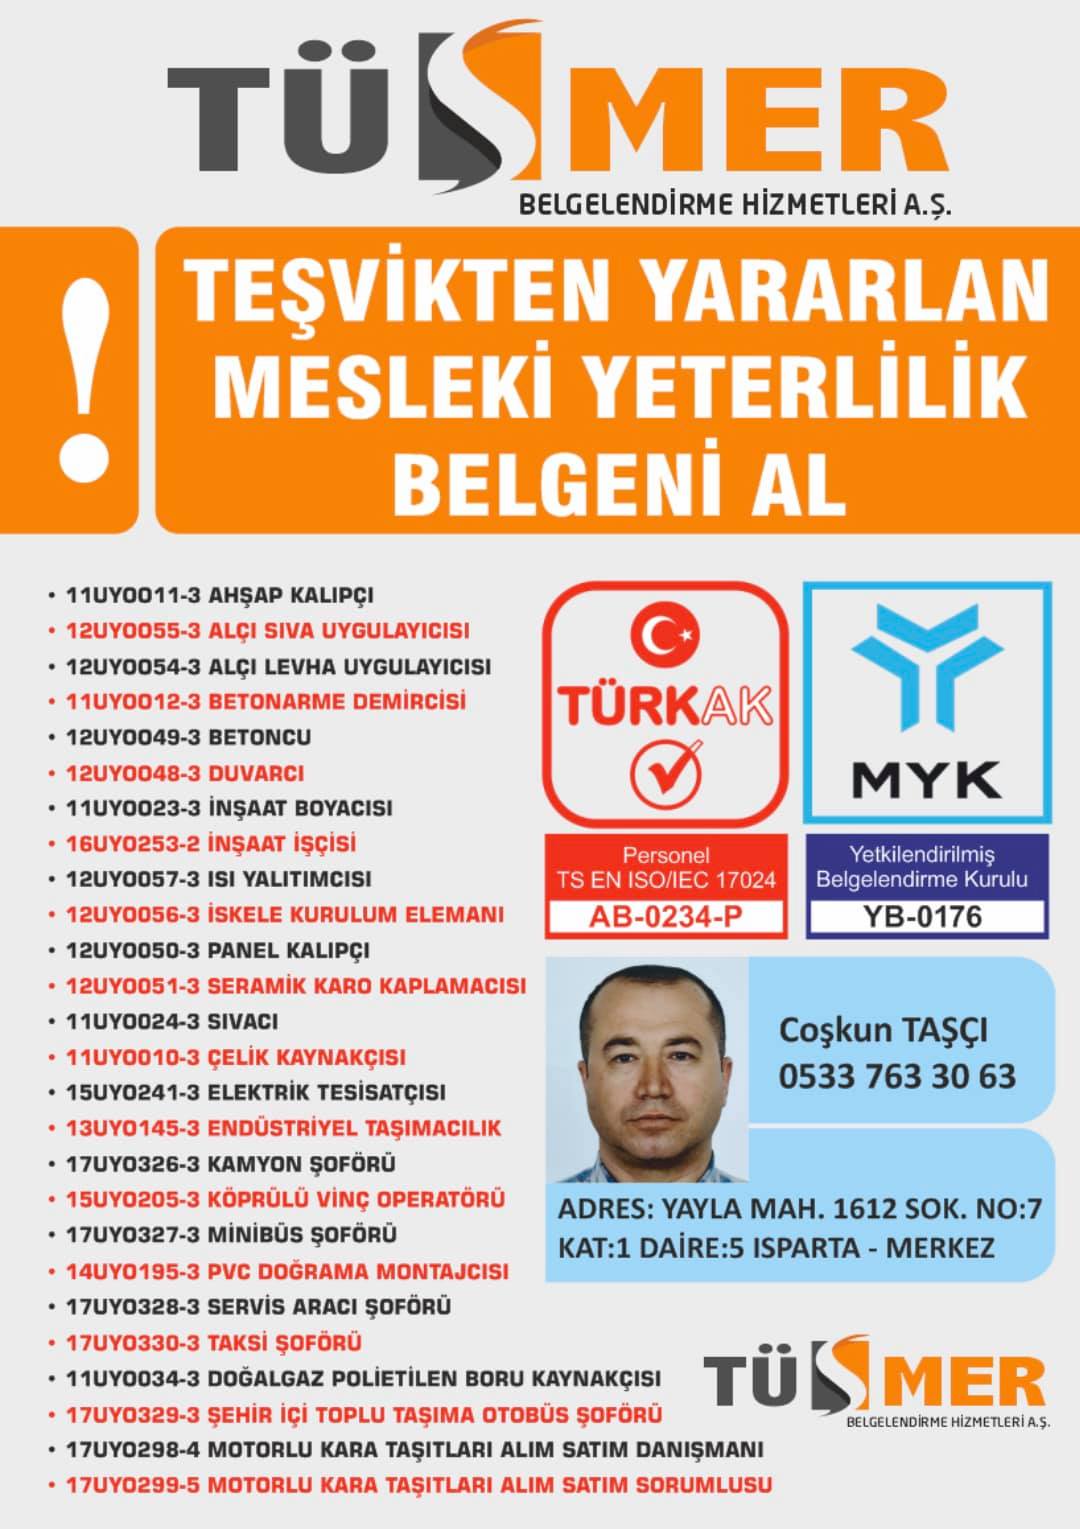 MYK MESLEKİ YETERLİLİK BELGESİ Gülensu Maltepe İstanbul